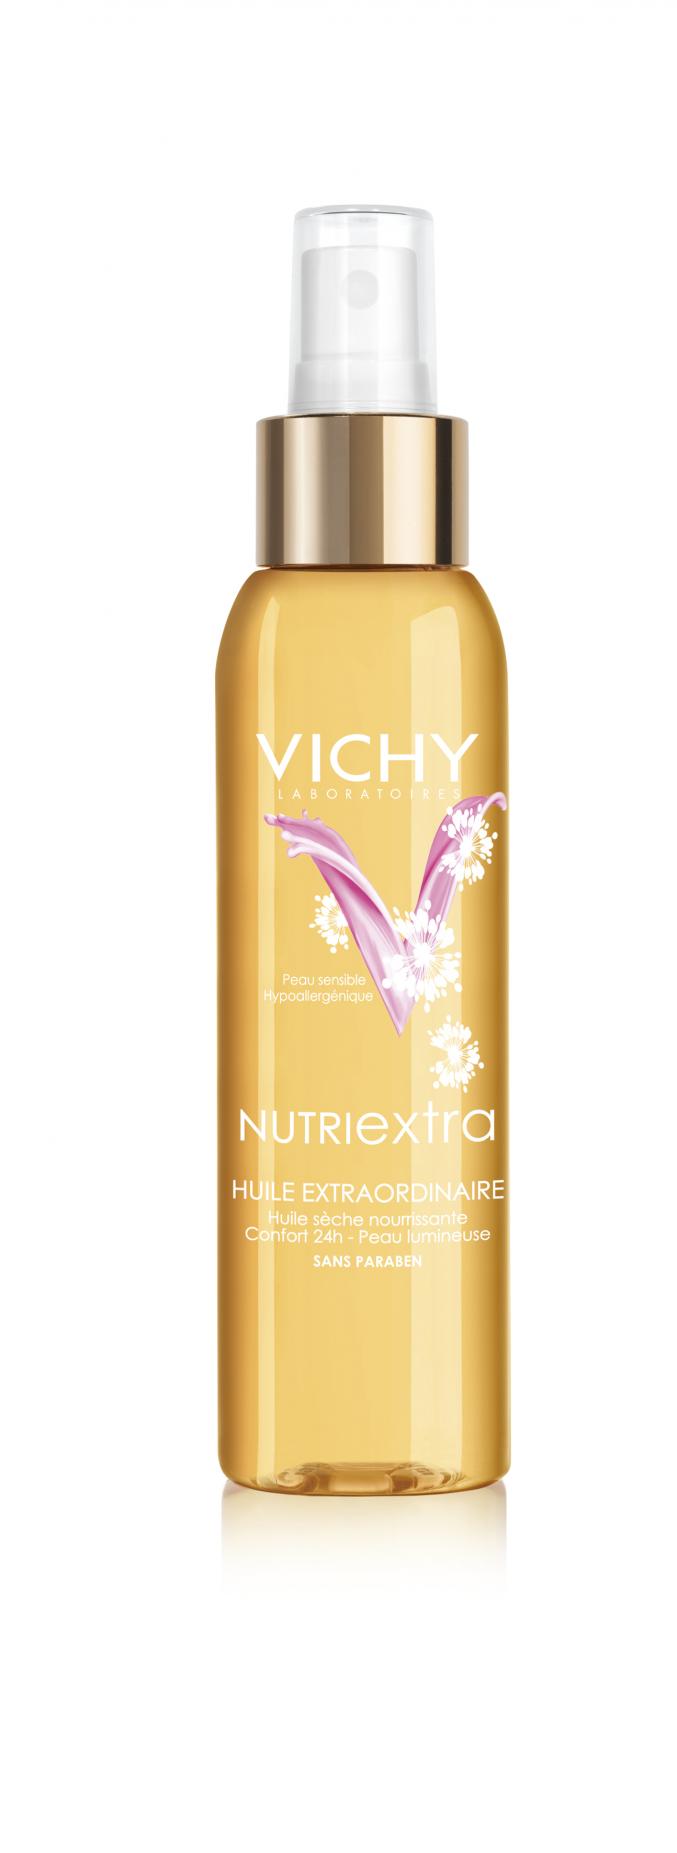 Nutriextra (Vichy)